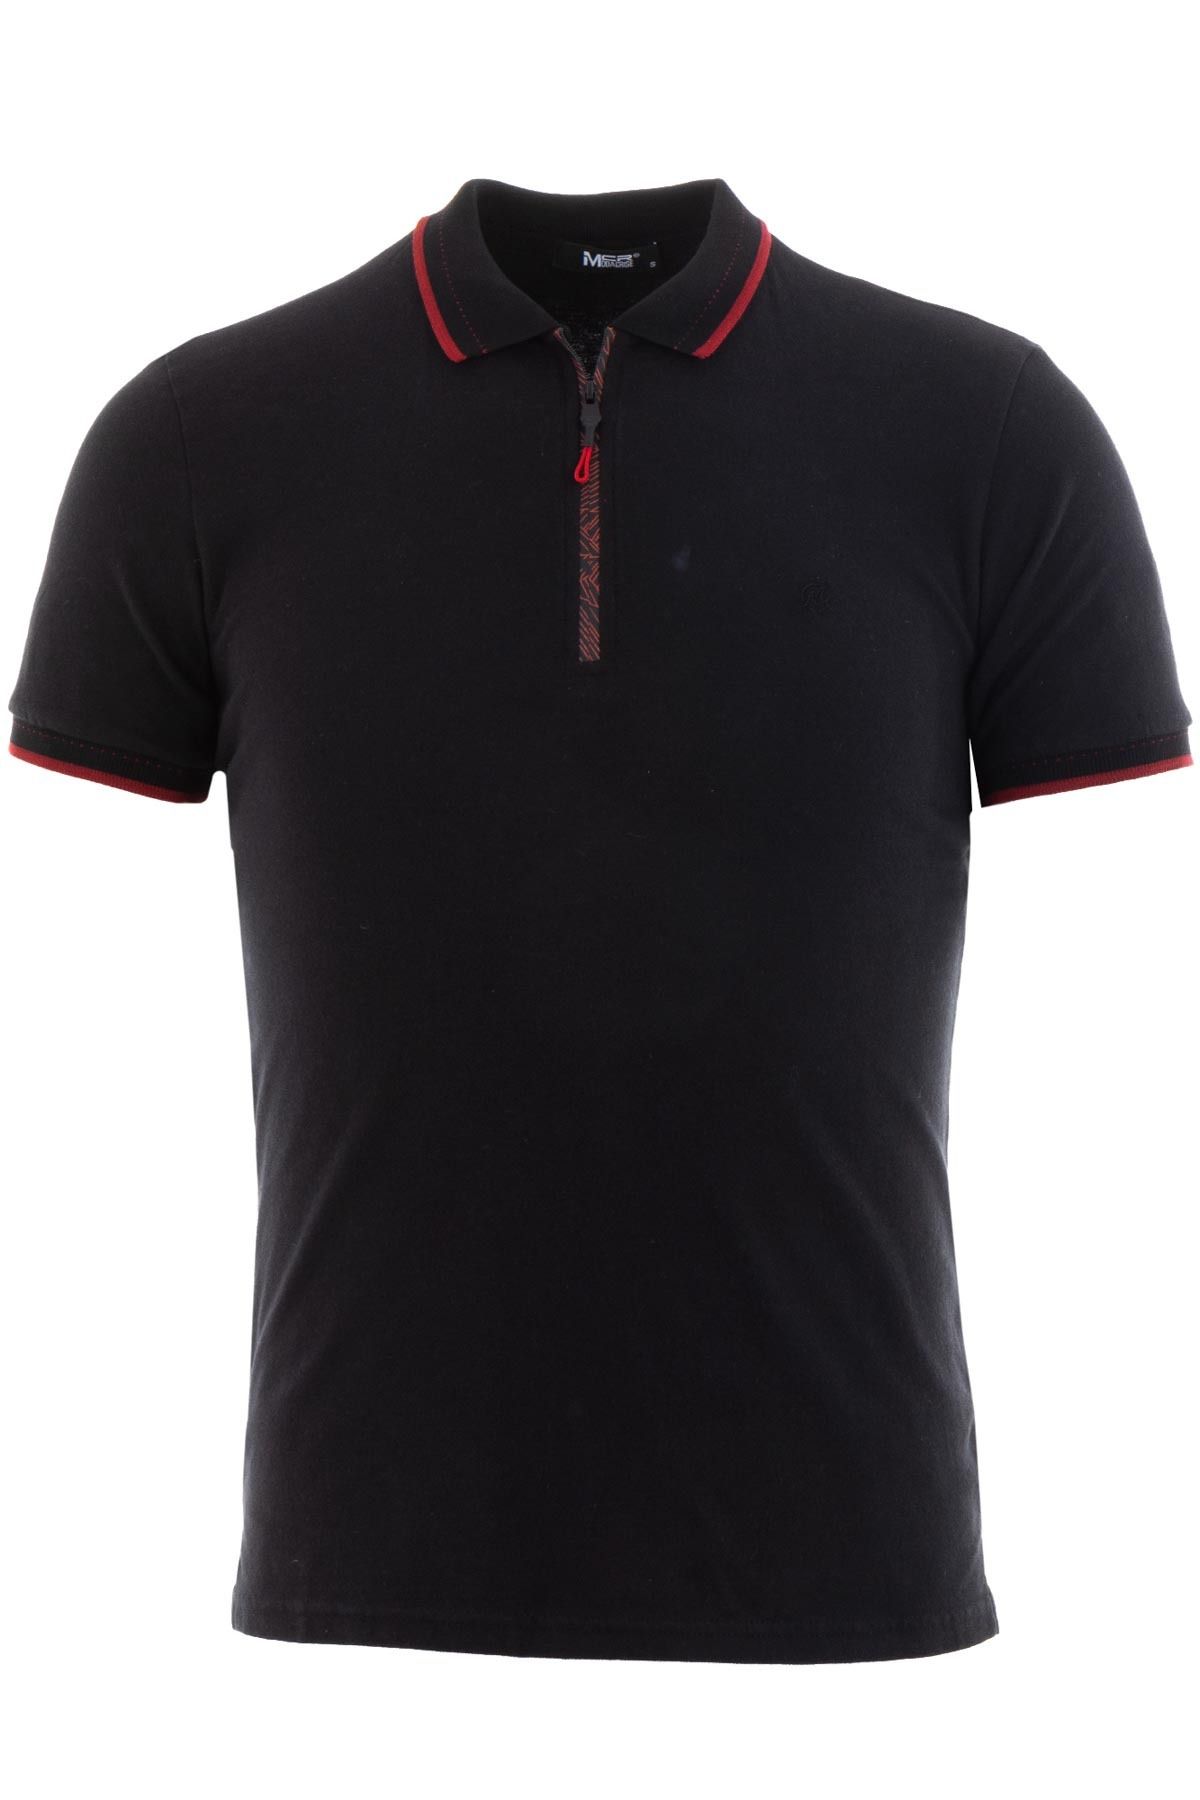 Mcr Fermuarlı Siyah Bordo Renk Slim Fit Erkek Polo Yaka T-shirt